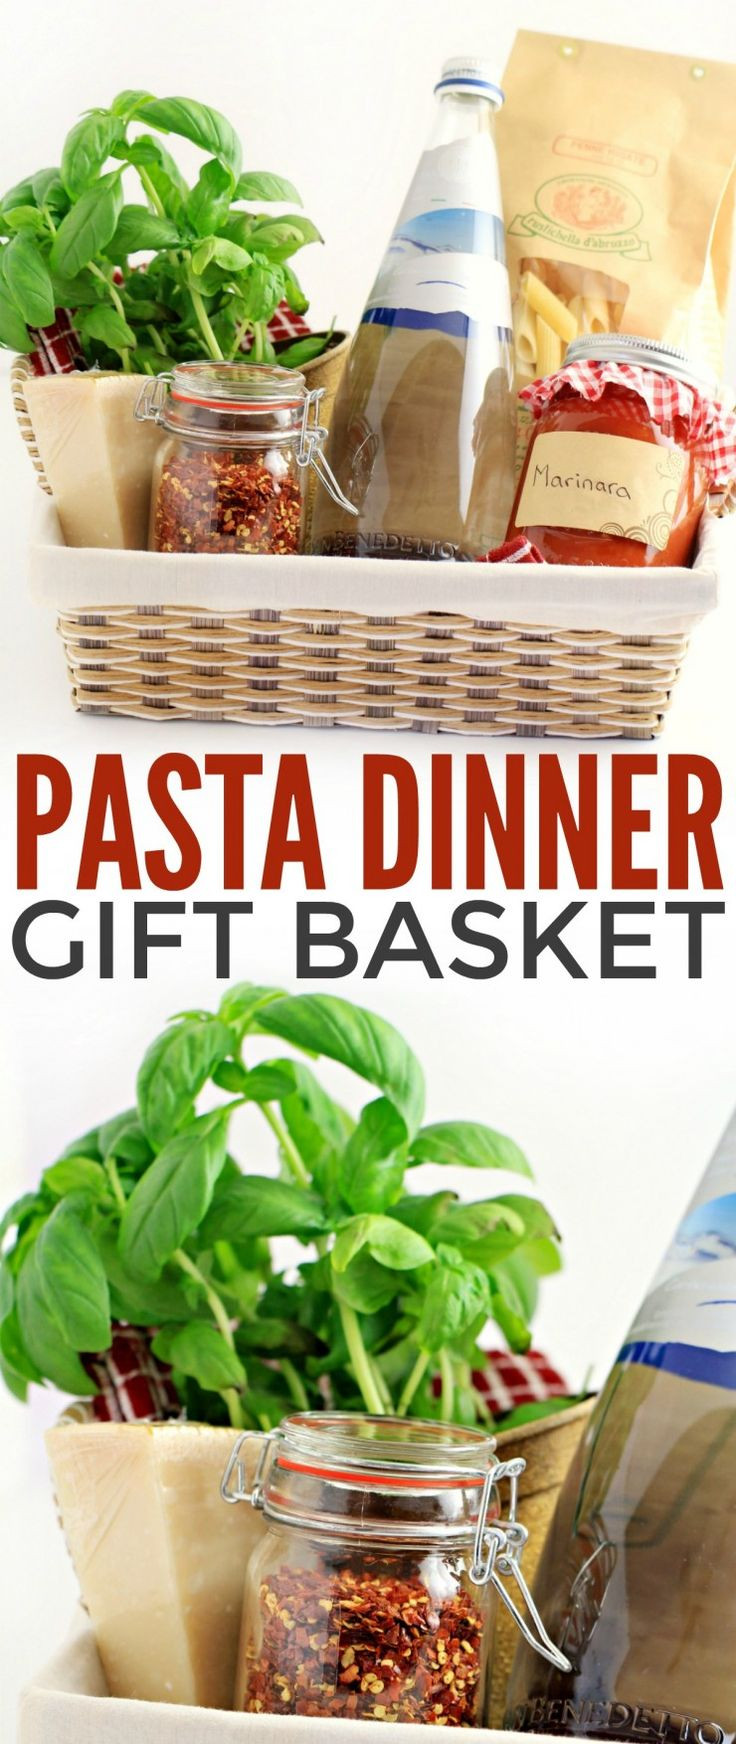 Dinner Gift Basket Ideas
 Pasta Dinner Gift Basket